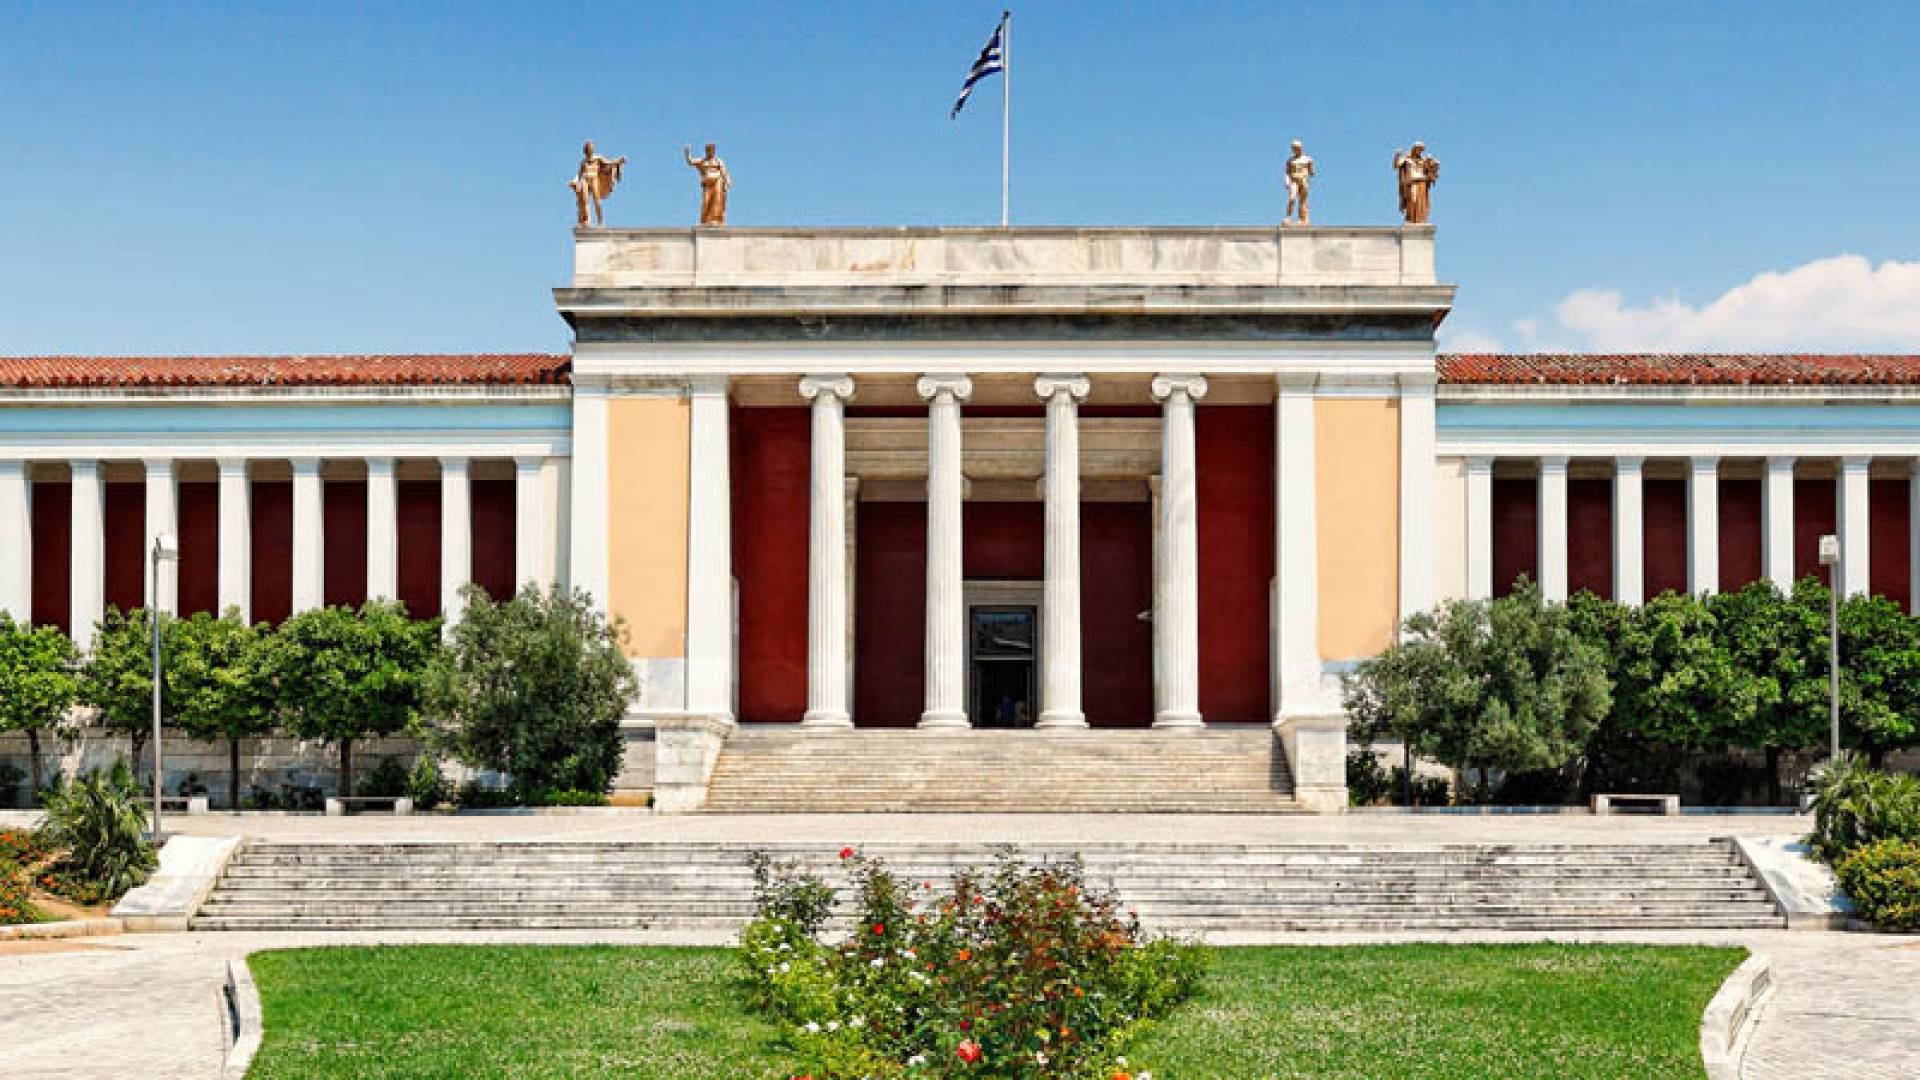 MUSEO ARCHEOLOGICO DI ATENE, Presentazione